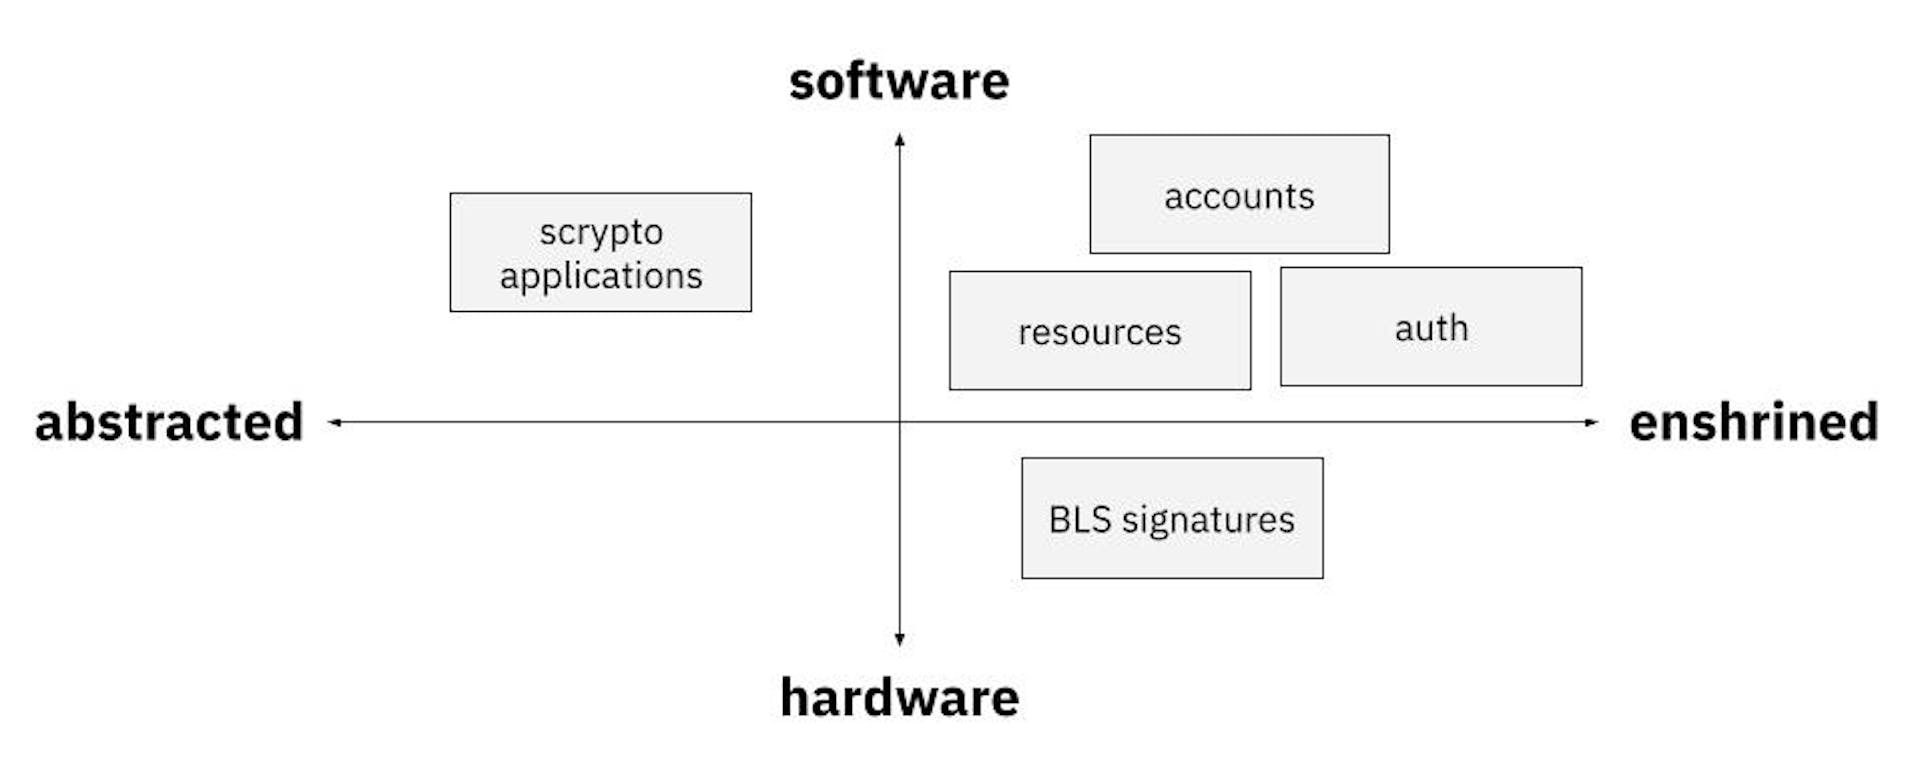 Entkopplung von Abstraktion/Verankerung vs. Software/Hardware